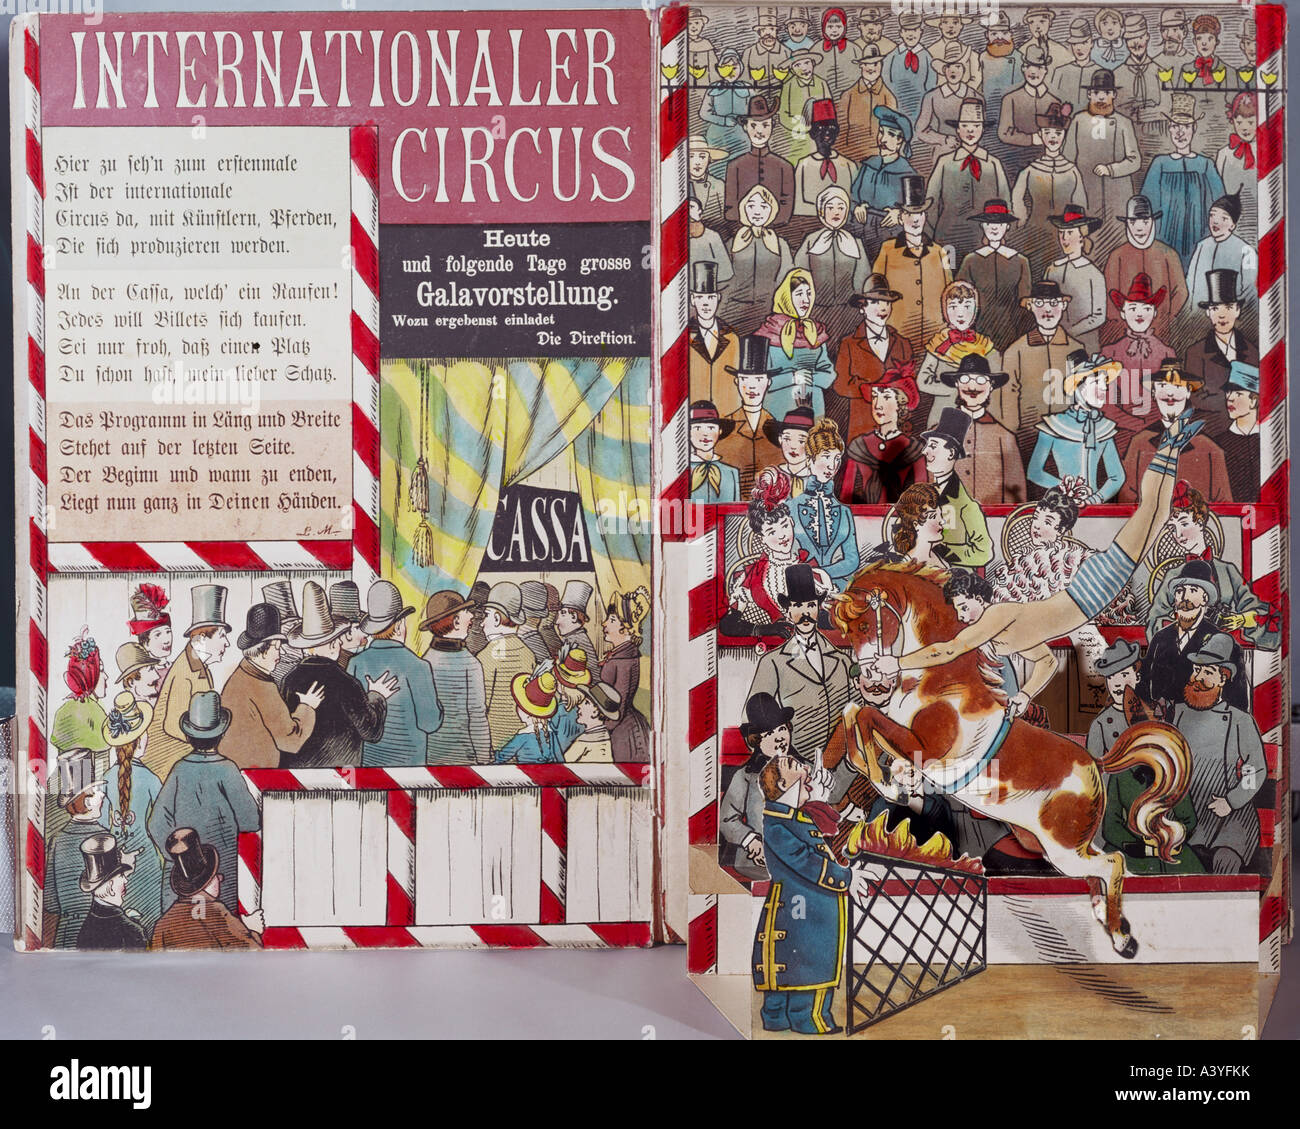 Circo, circo internazionale, titolo, dal libro di immagini, da L.Meggendorfer, J. F. Schreiber Publishing, Esslingen, 19th secolo, Museo Civico, Monaco di Baviera, , Foto Stock